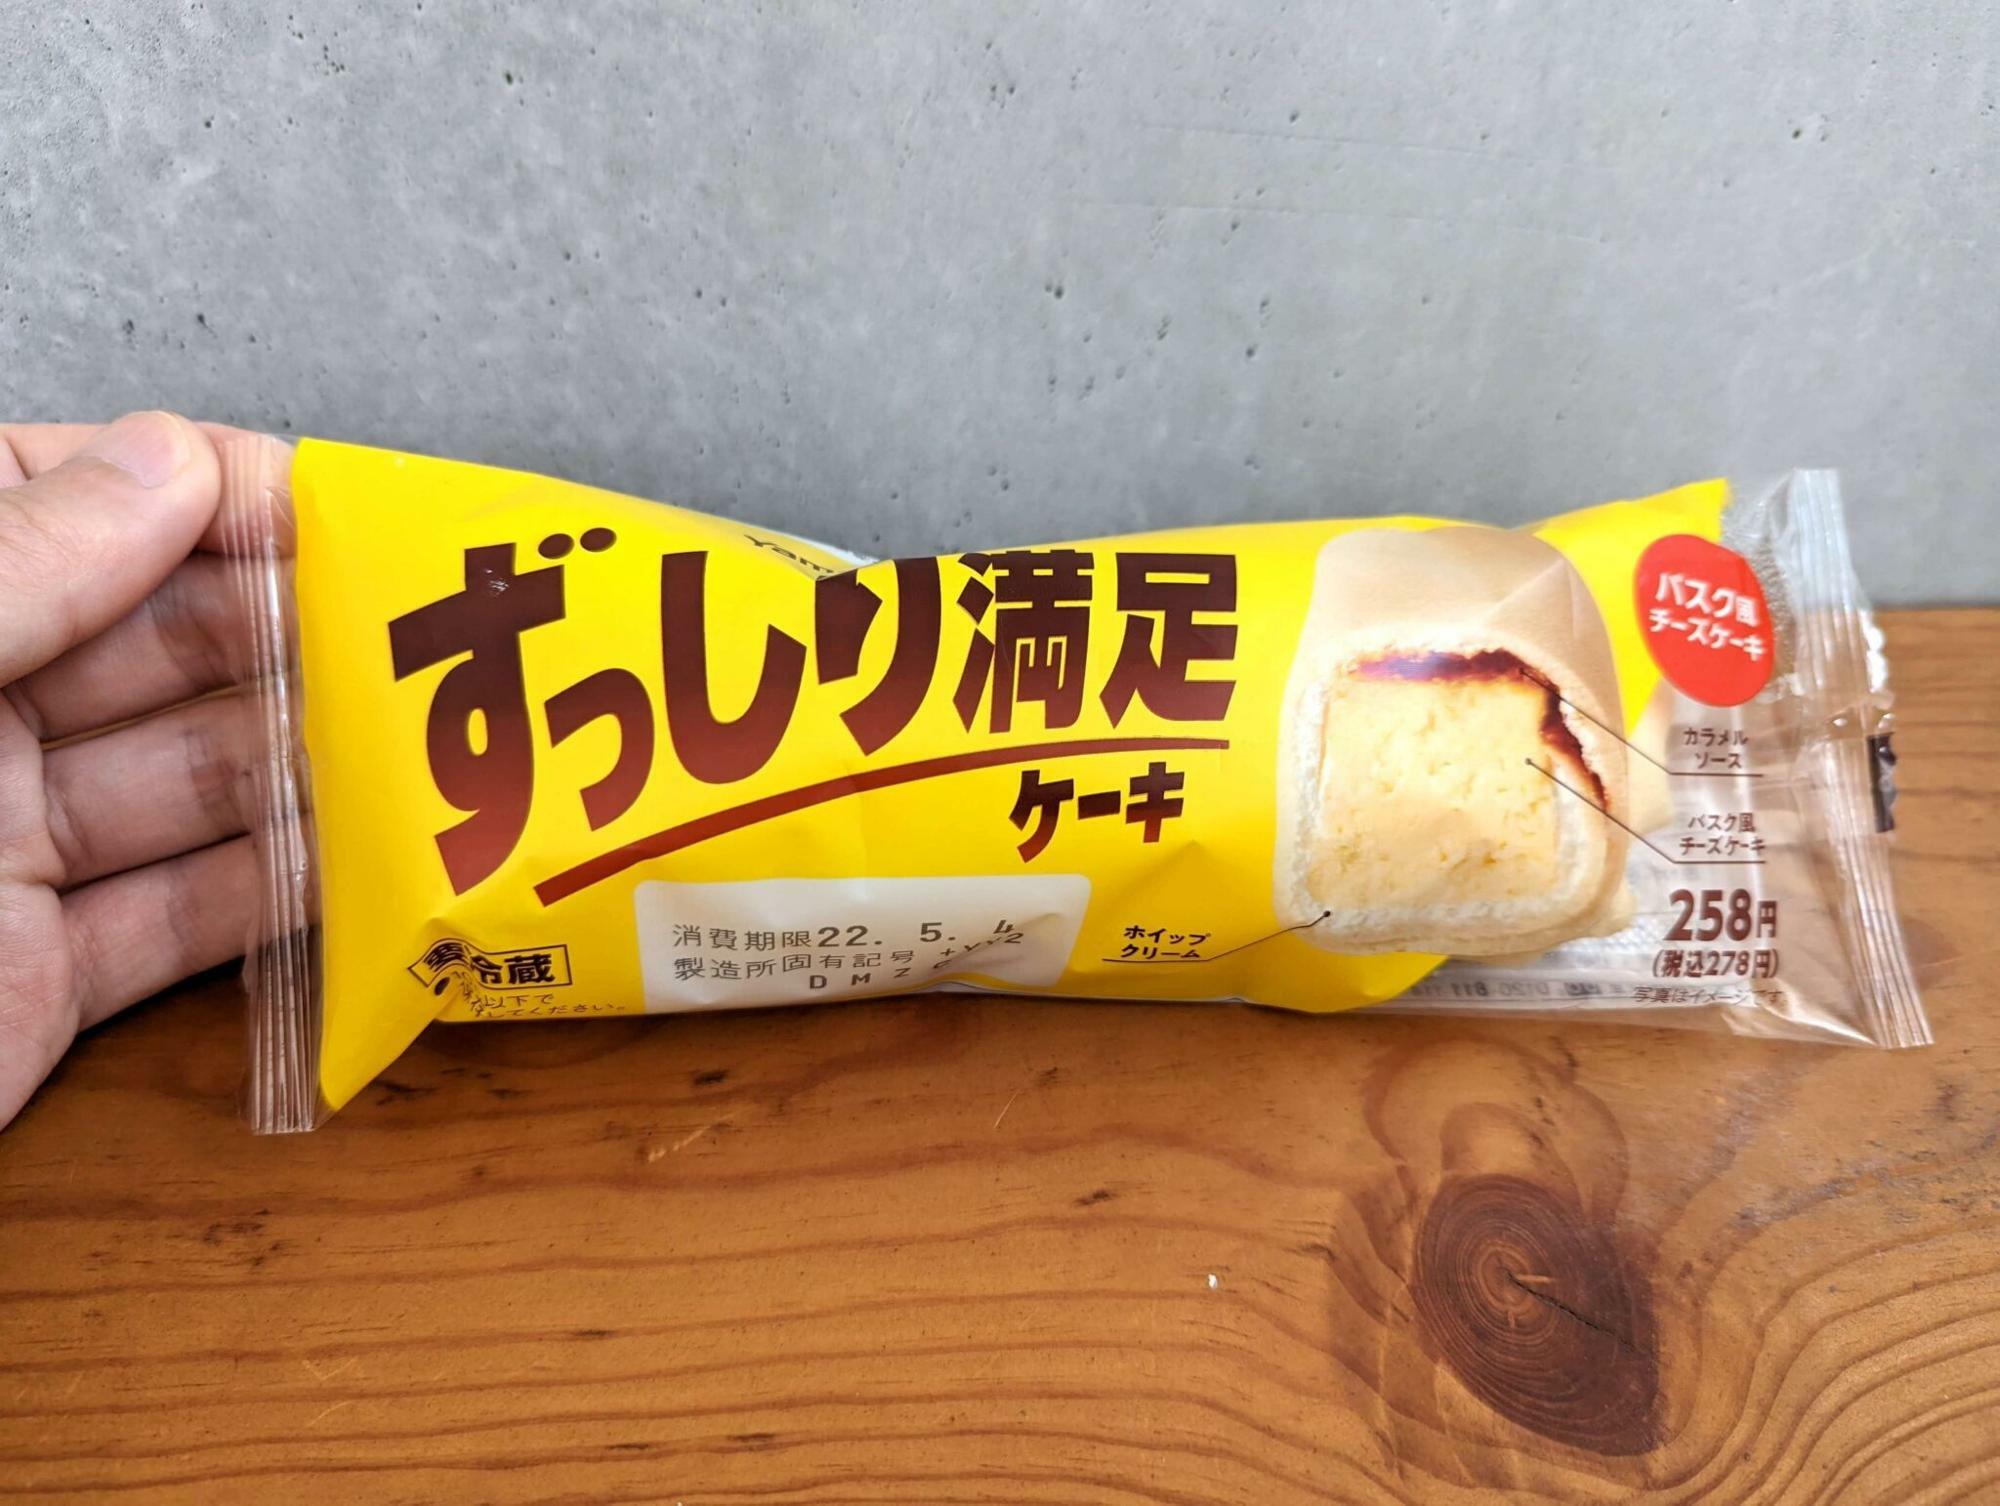 山崎製パンが過去に販売していたスイーツ。こちらもバスク風チーズケーキを包んでいた。